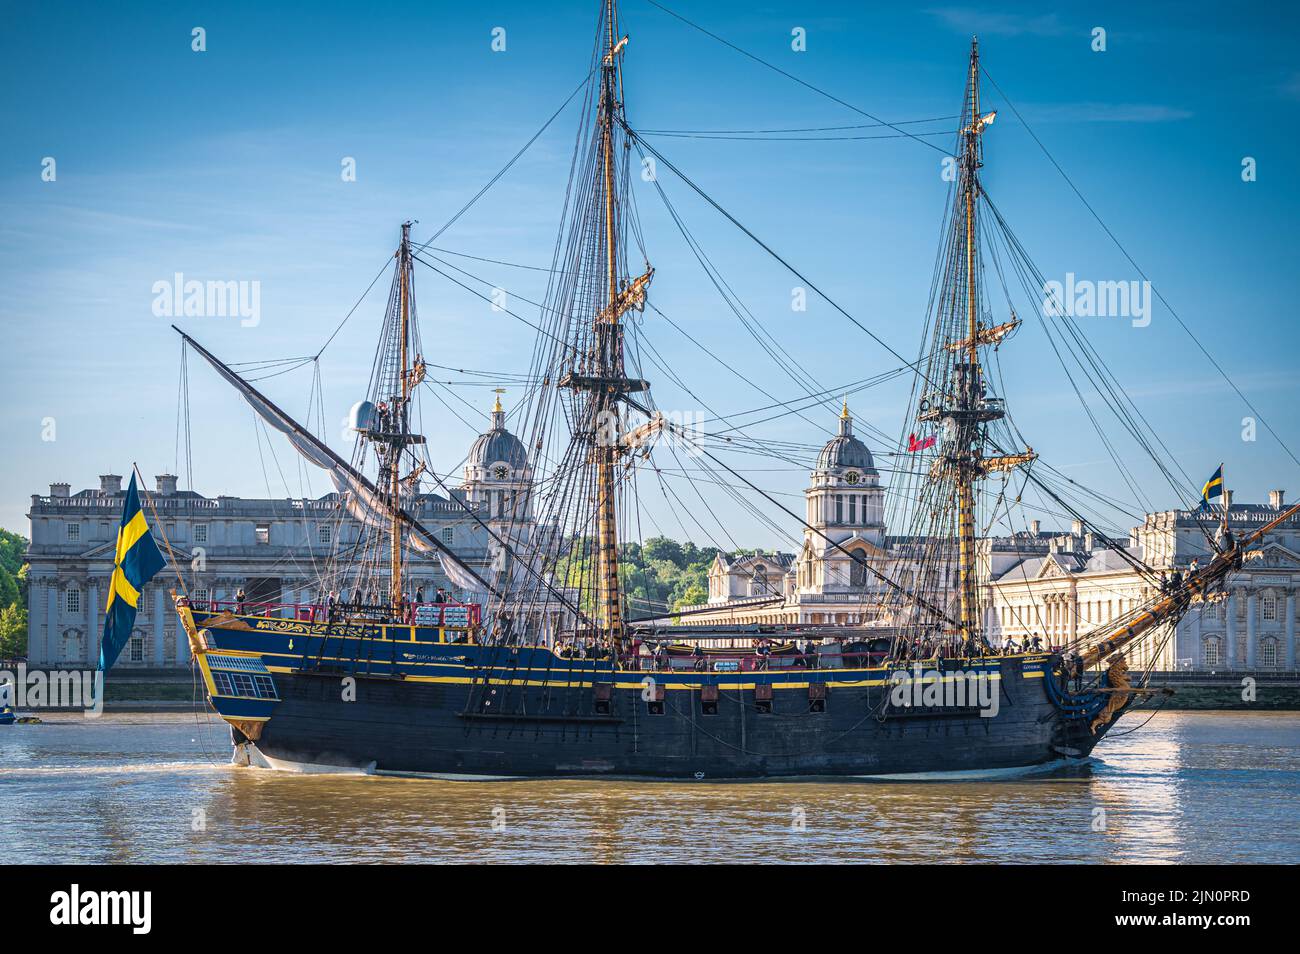 Réplica del buque sueco del siglo 18th Götheborg Visitando Londres, pasando por el Old Royal Naval College, Londres, Reino Unido Foto de stock